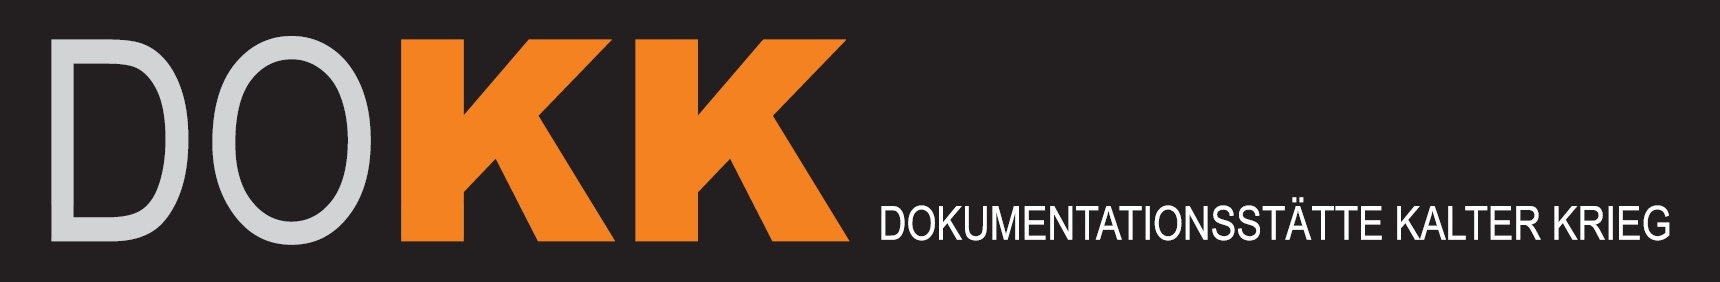 Logo DOKUMENTATIONSSTÄTTE KALTER KRIEG